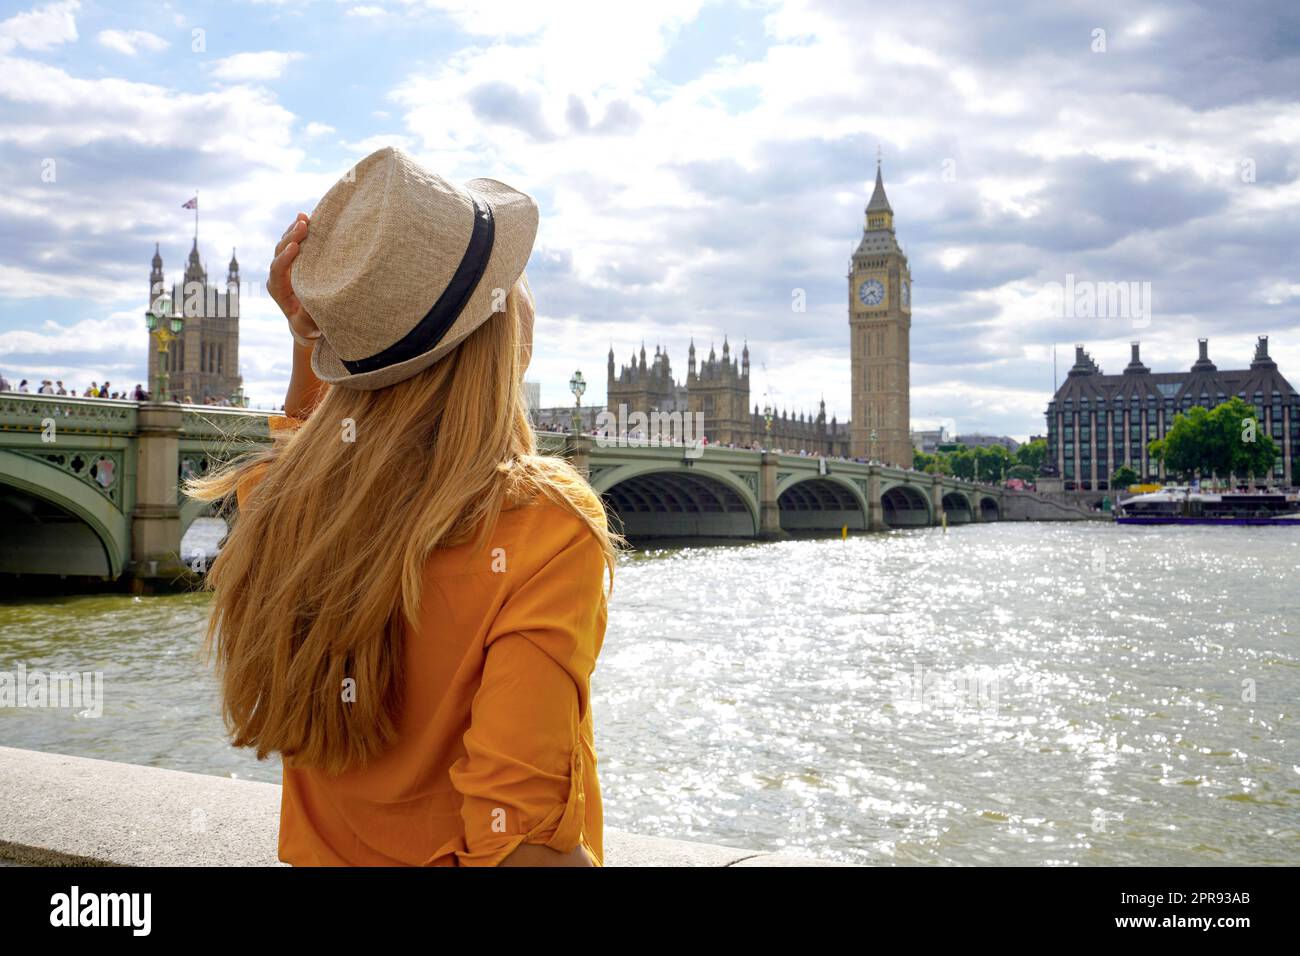 Tourismus in London. Rückansicht eines Reisenden Mädchens, das die Westminster Bridge und den Palast auf der Themse mit dem berühmten Big Ben Tower in London, Großbritannien, bewundern kann. Stockfoto